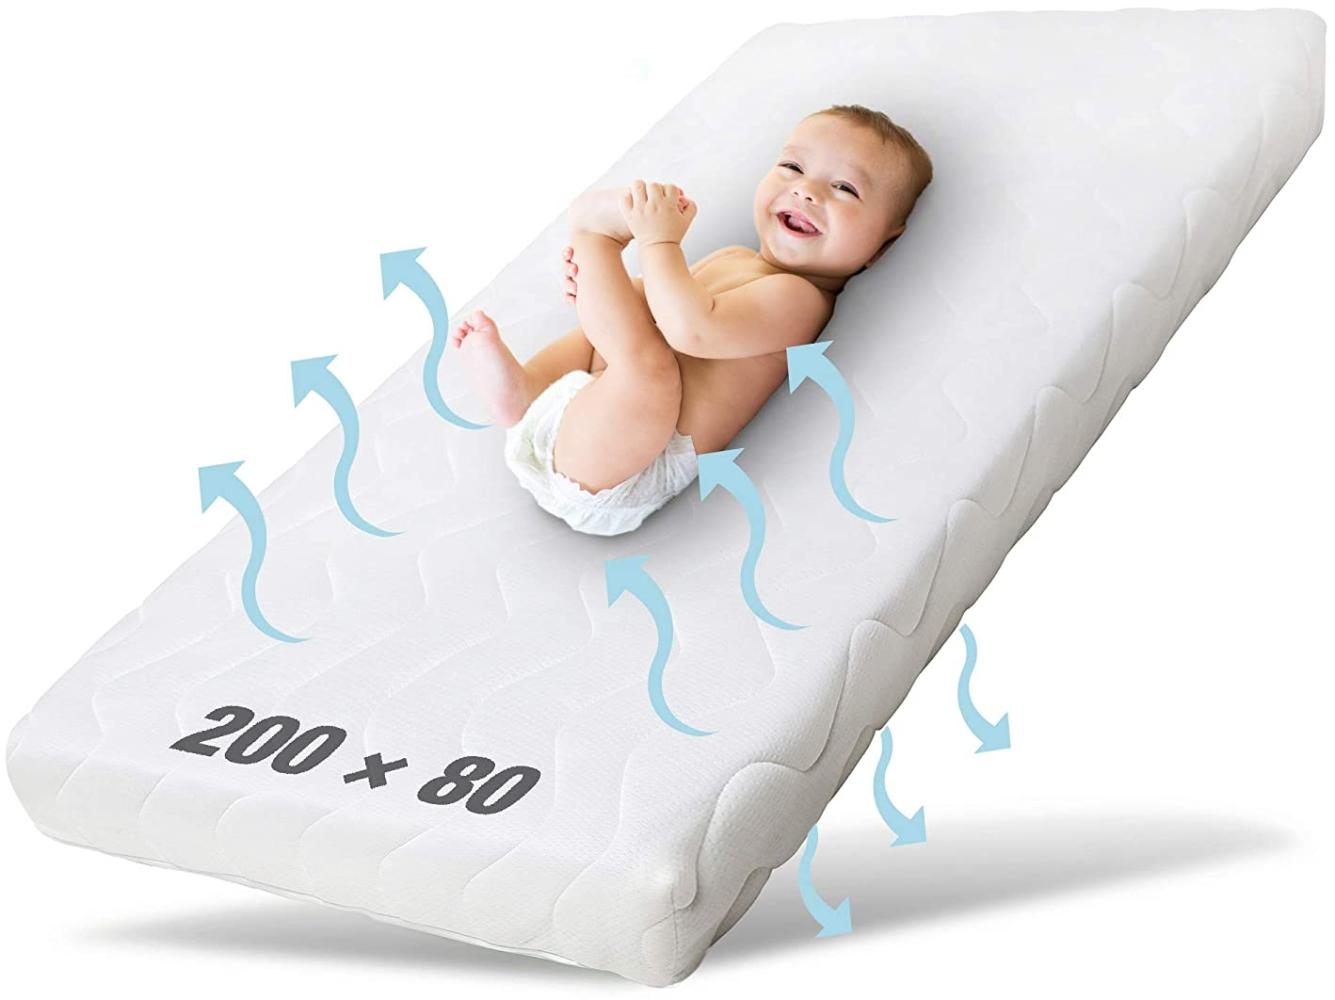 Ehrenkind® Kindermatratze Pur | Baby Matratze 80x200 | Babymatratze 80x200 aus hochwertigem Schaum und Hygienebezug Bild 1